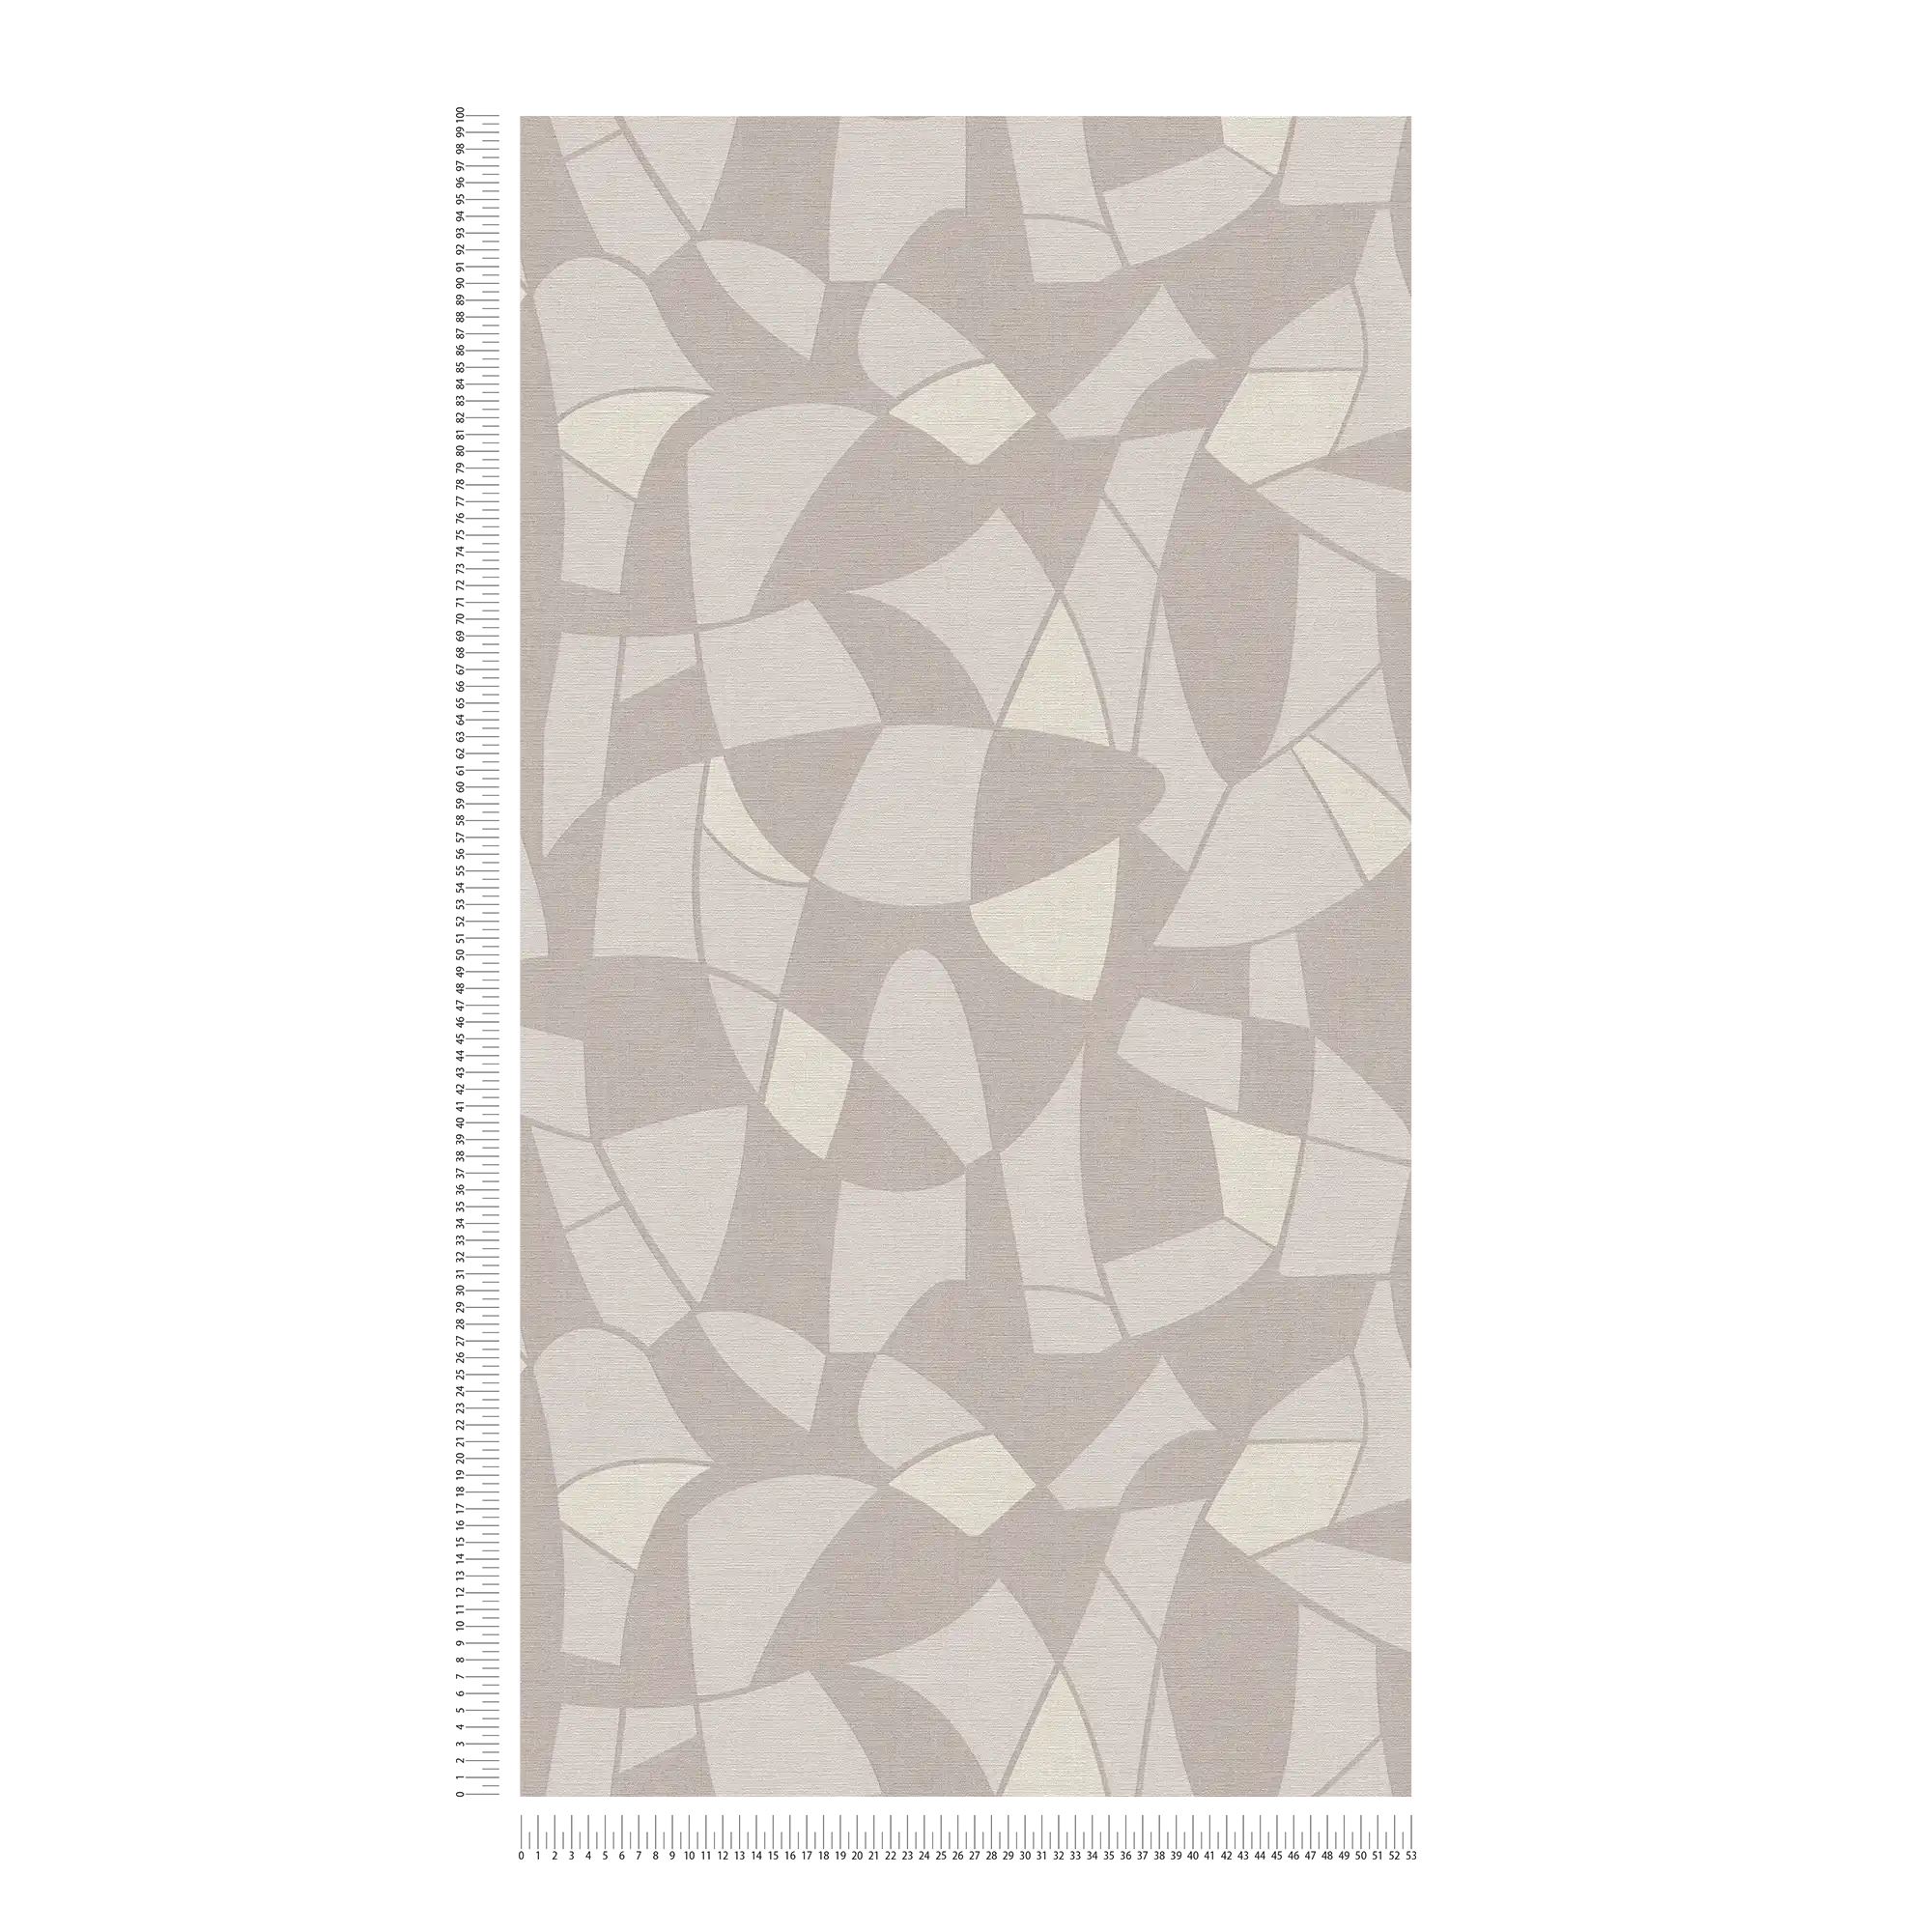             Vliestapete in dezenten Farben im abstrakten Muster – Grau, Creme
        